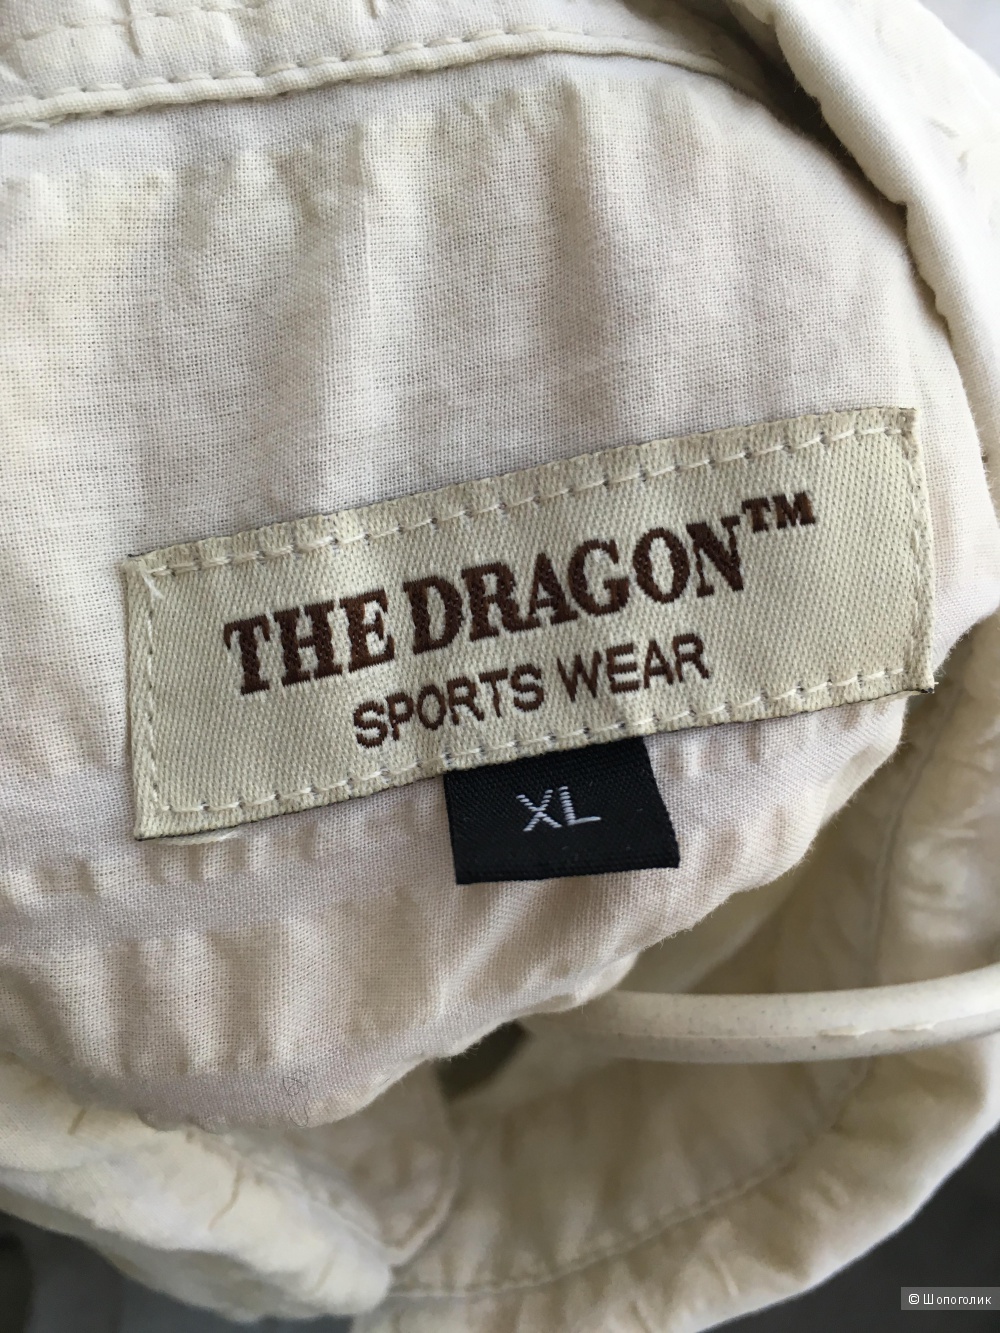 Рубашка The dragon, размер XL (48-50)